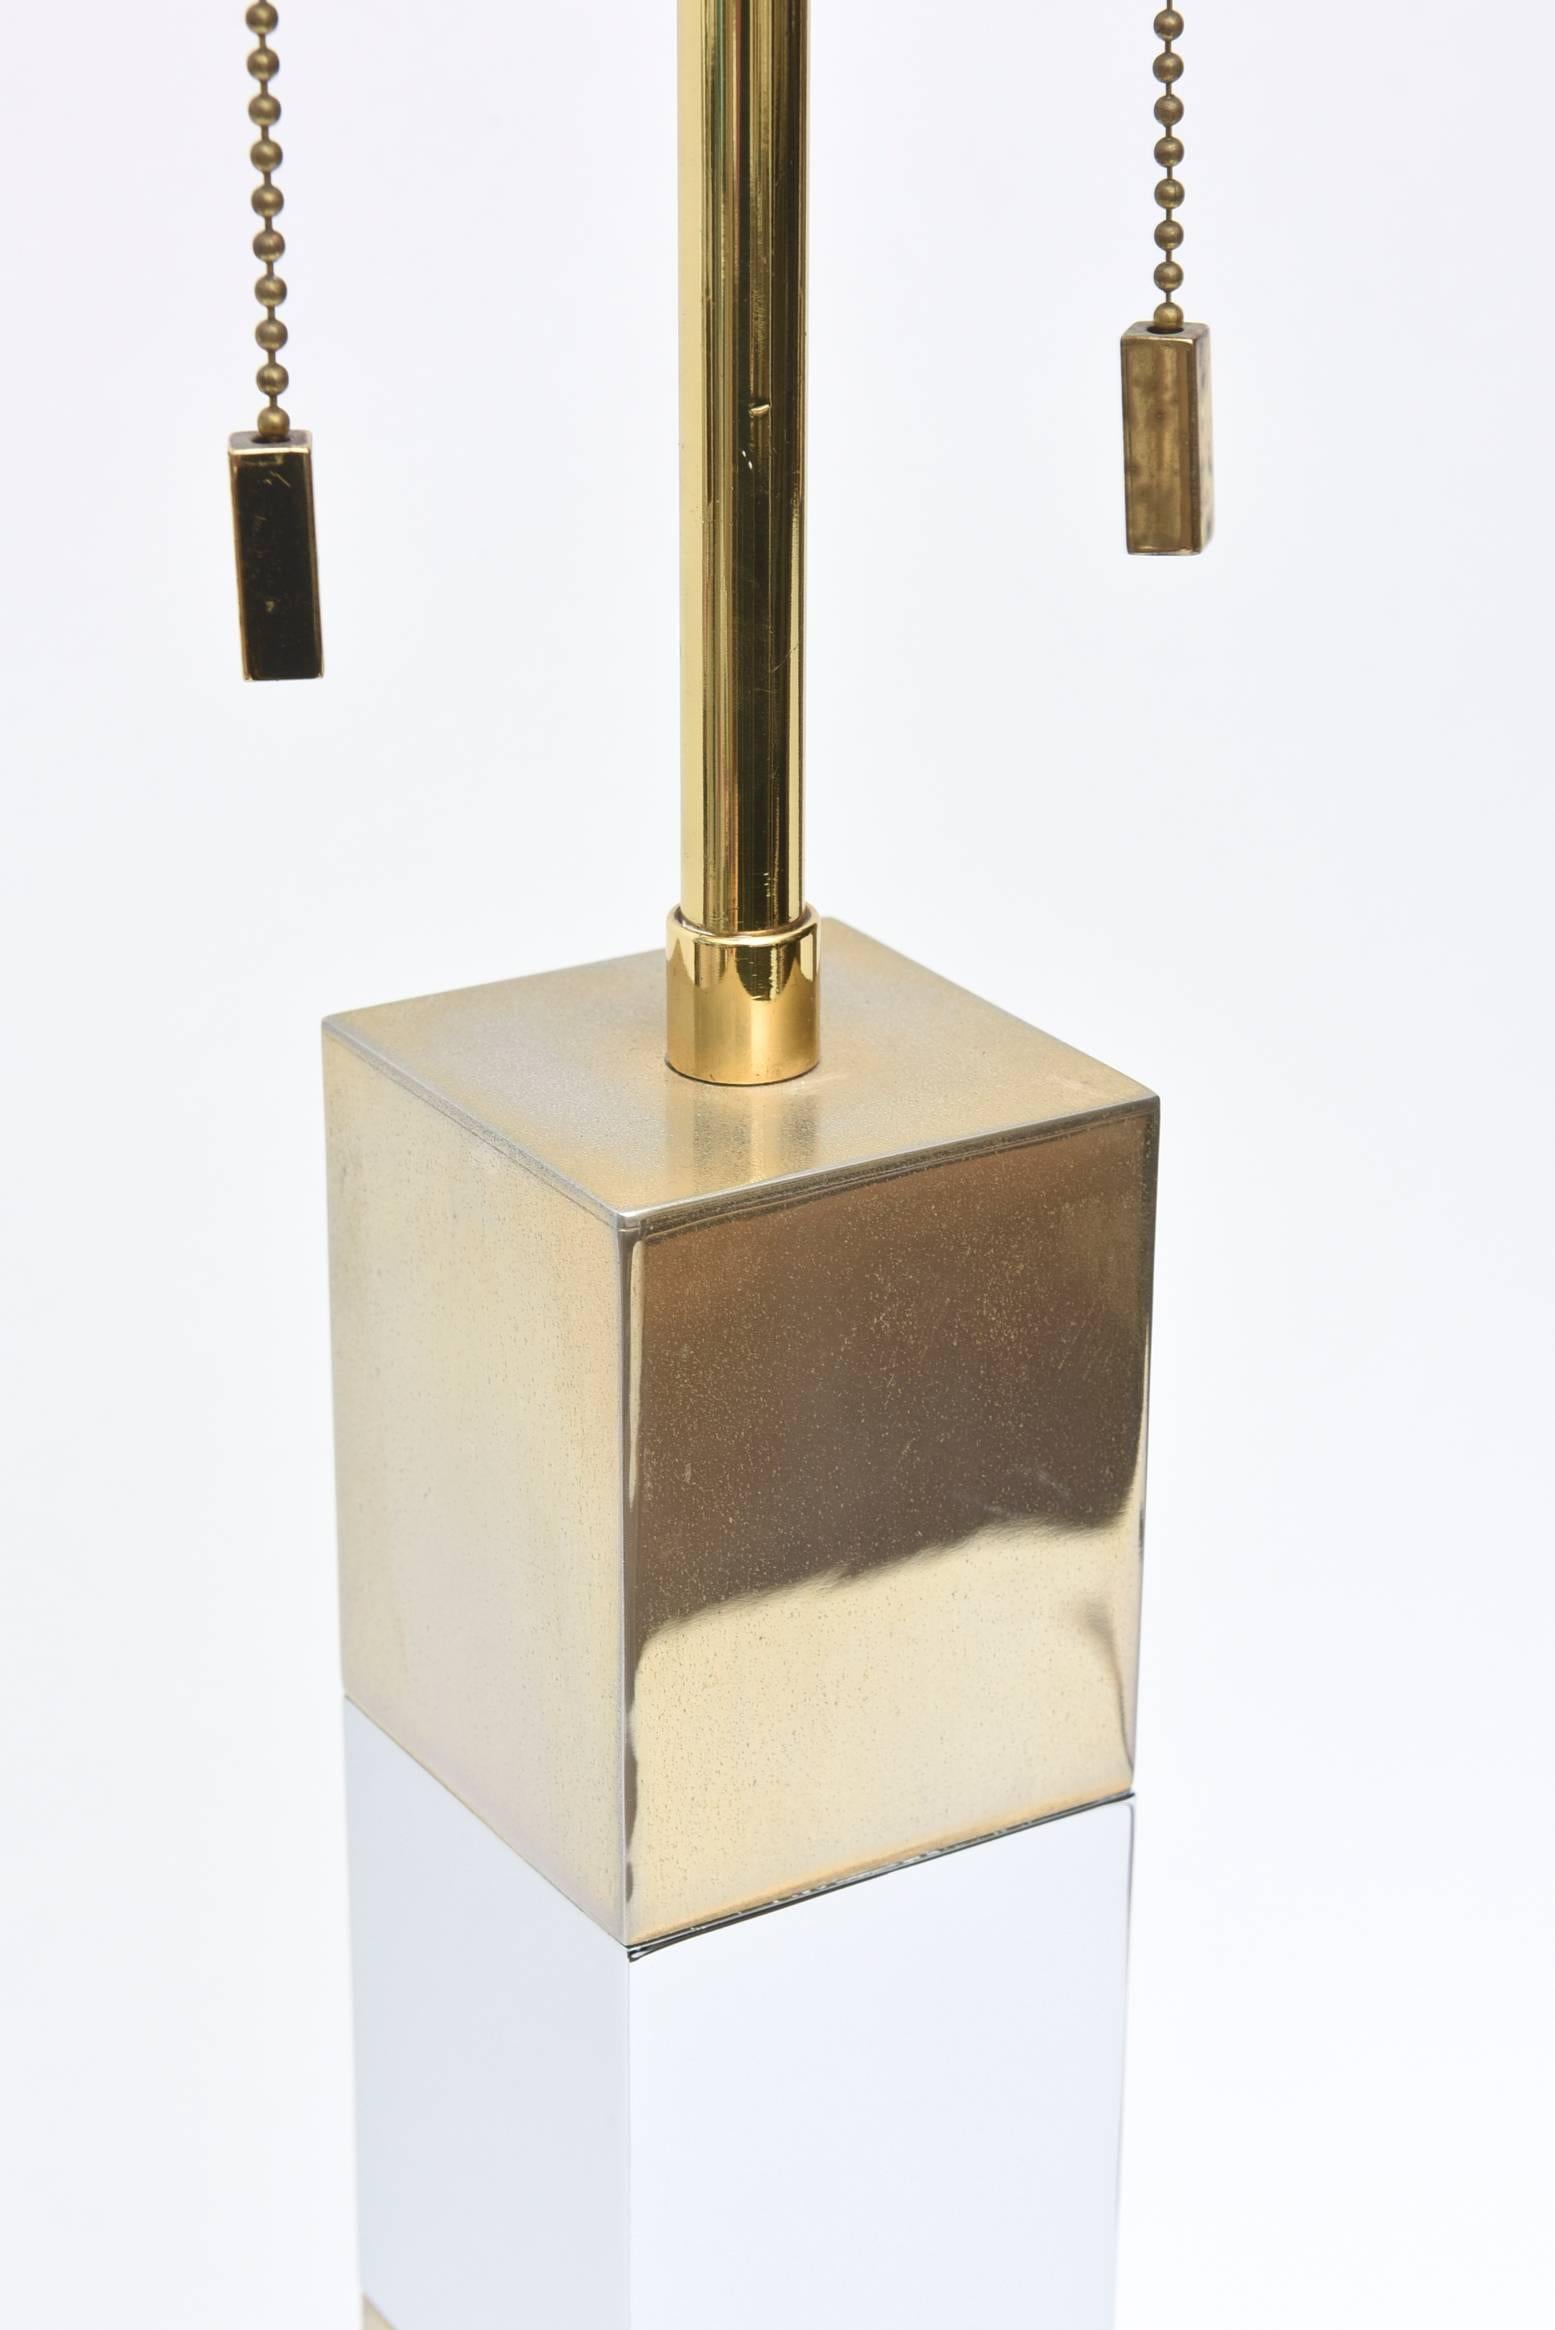 American Karl Springer Style Alternating Brass and Chrome Cube Column Table or Desk Lamp